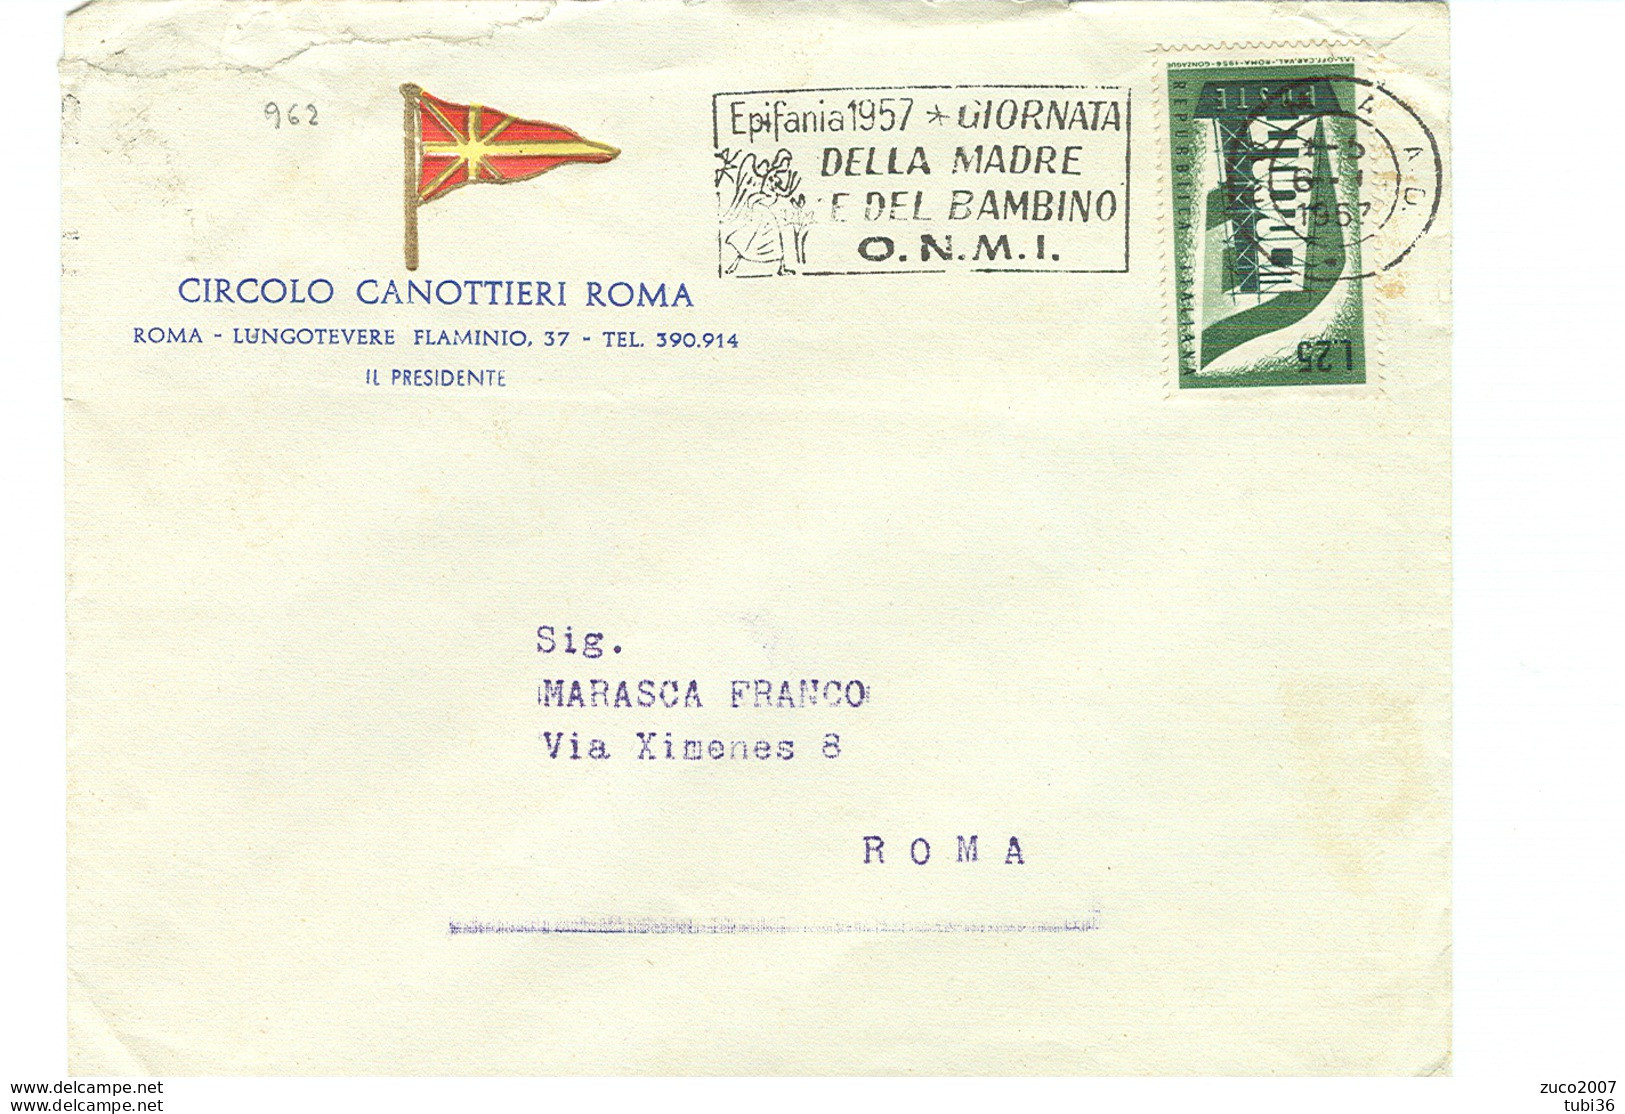 EPIFANIA 1957, GIORNATA DELLA MADRE E DEL BAMBINO- O.N.M.I.- TIMBRO POSTE ROMA TARGHETTA,1957,CIRCOLO CANOTTIERI,ROMA, - Giorno Della Mamma